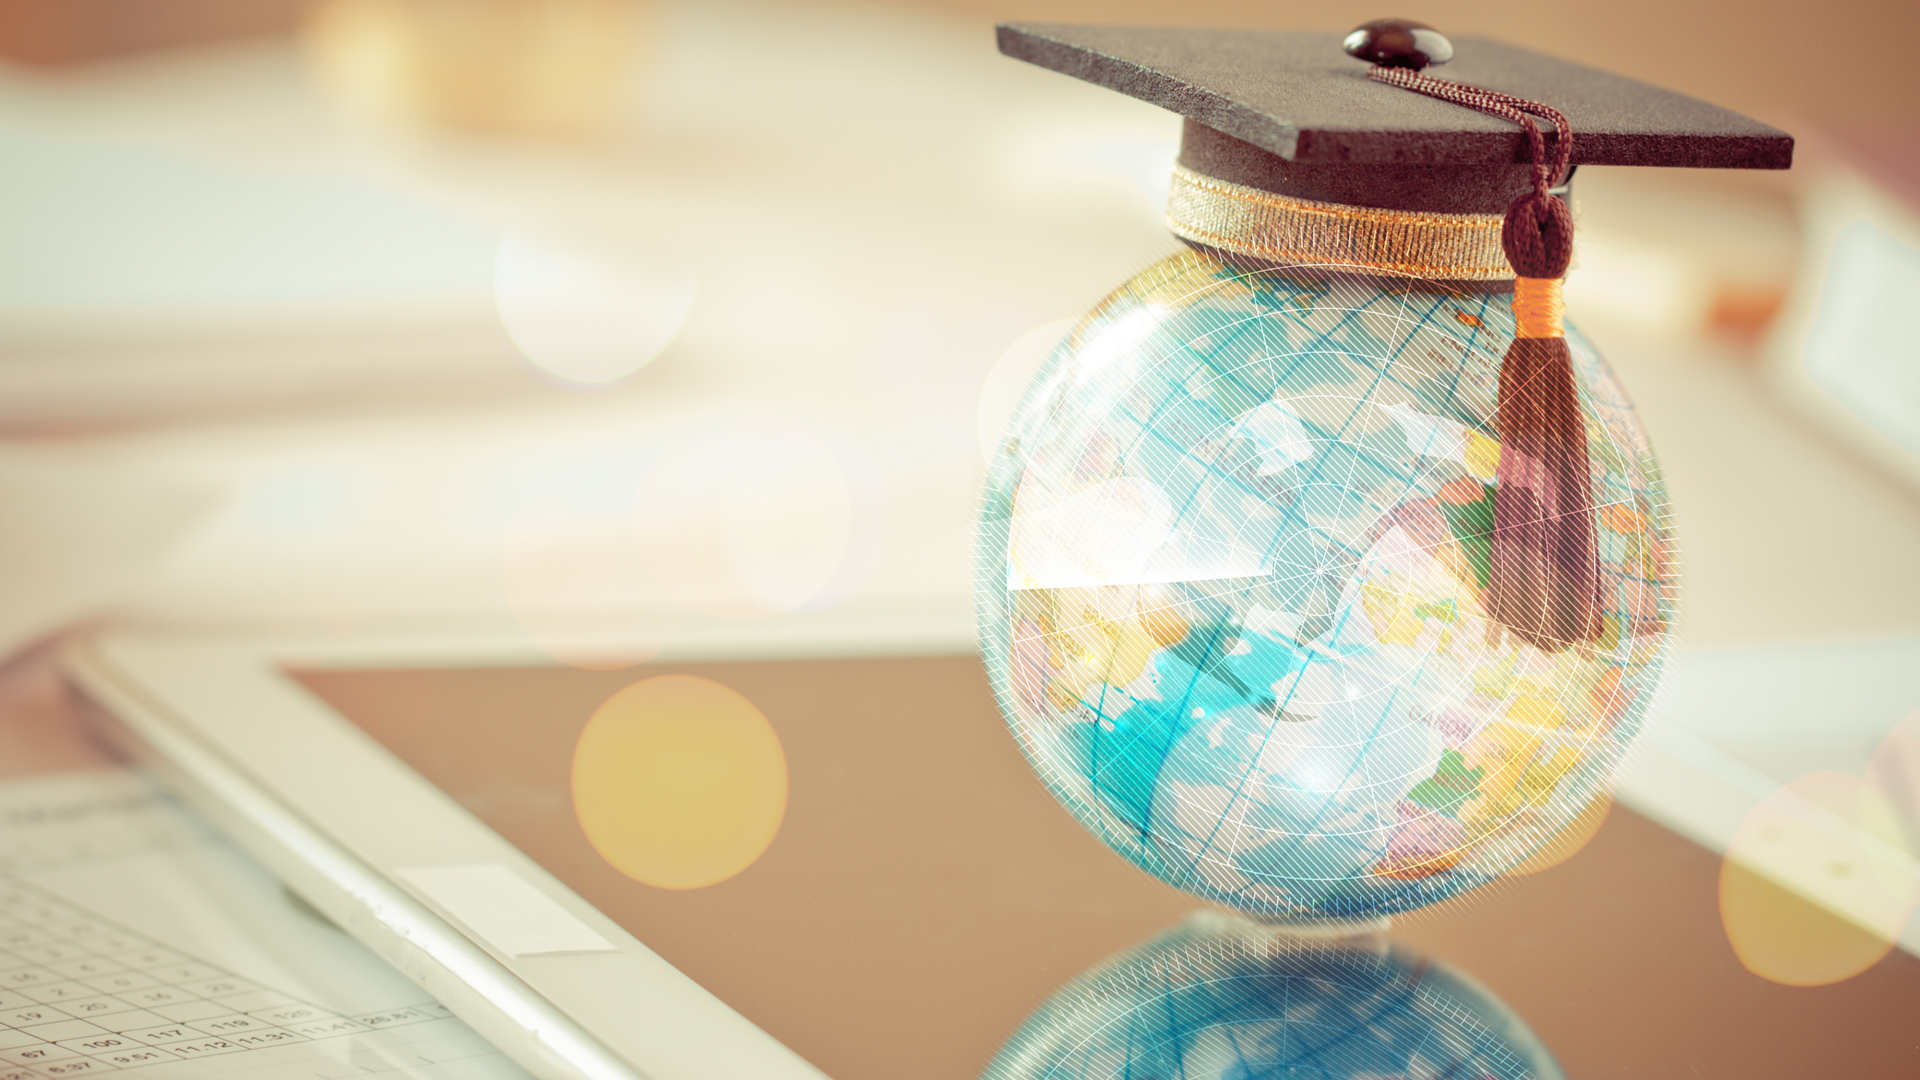 Os jovens podem conquistar uma experiência internacional cursando graduação ou pós-graduação sem sair do Brasil, em faculdades como a ESIC Internacional. | Foto: Shutterstock